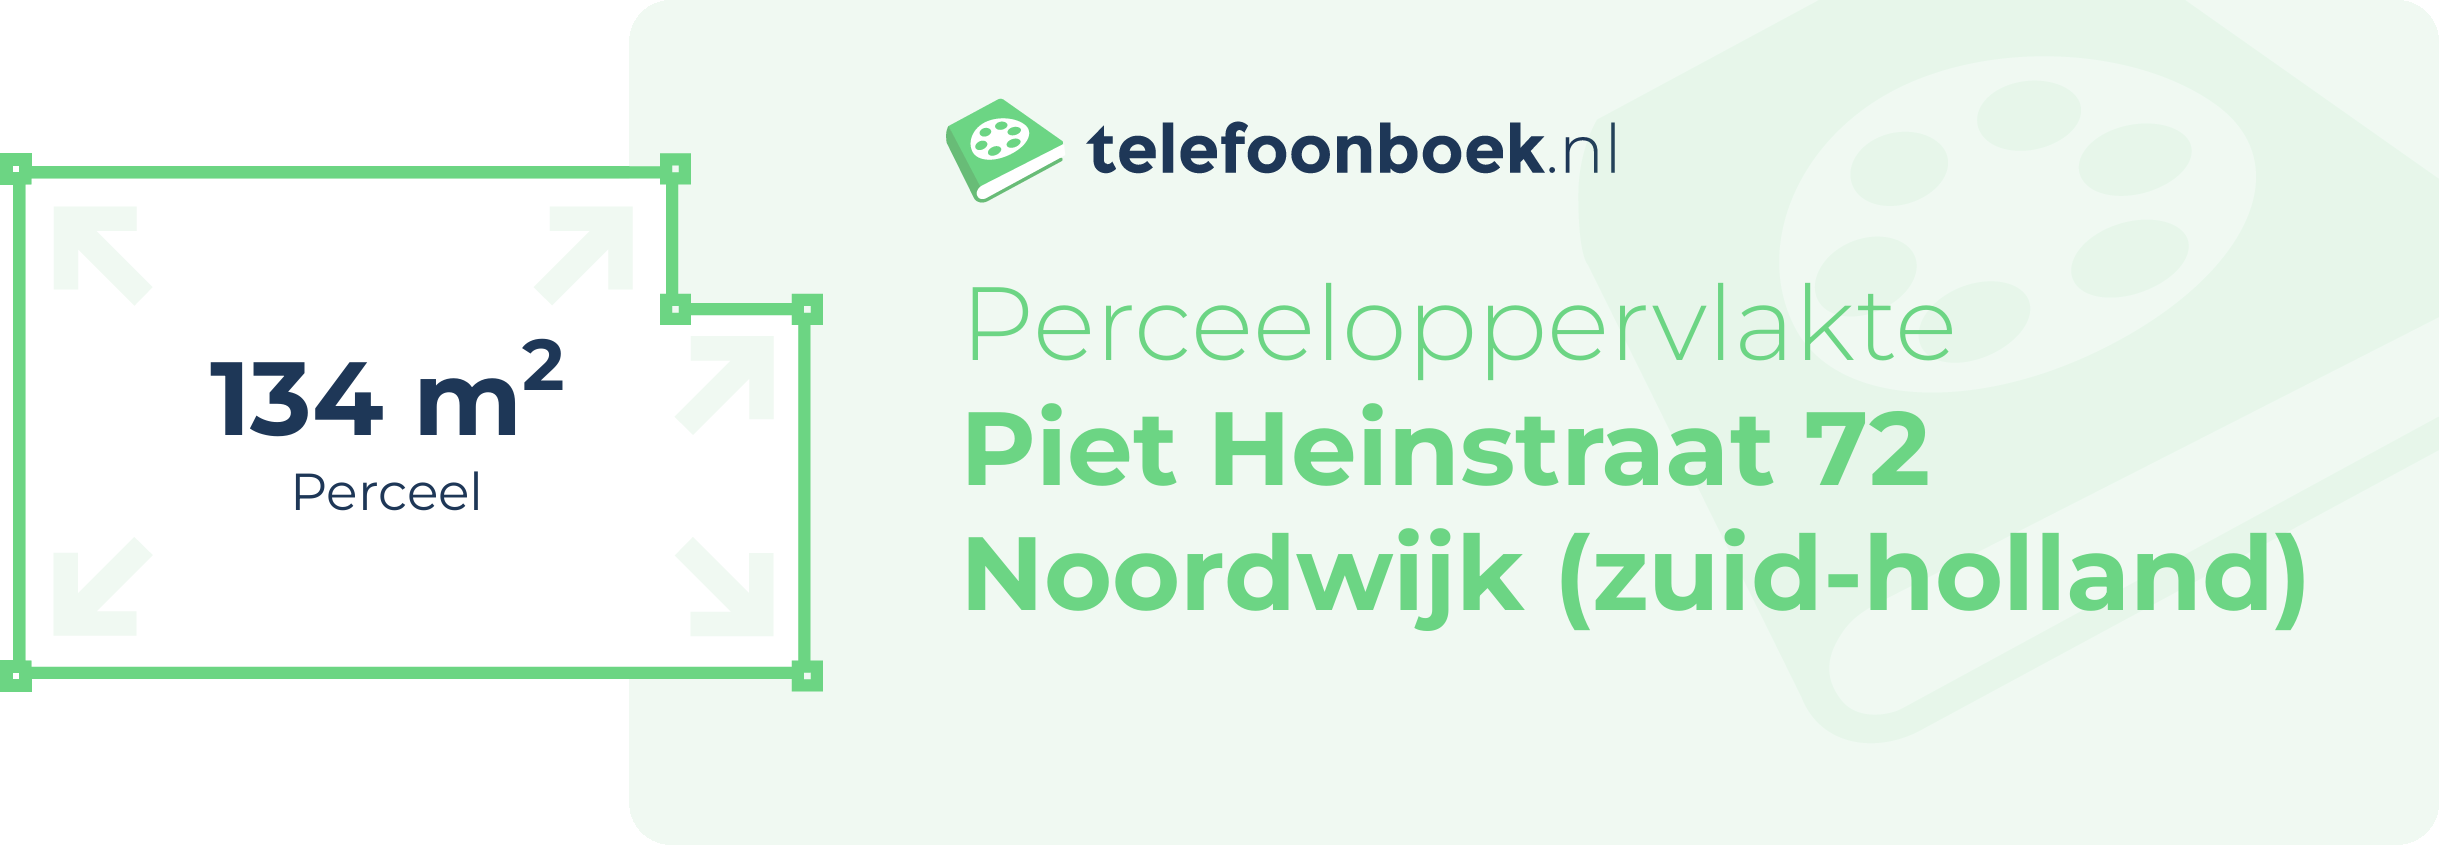 Perceeloppervlakte Piet Heinstraat 72 Noordwijk (Zuid-Holland)